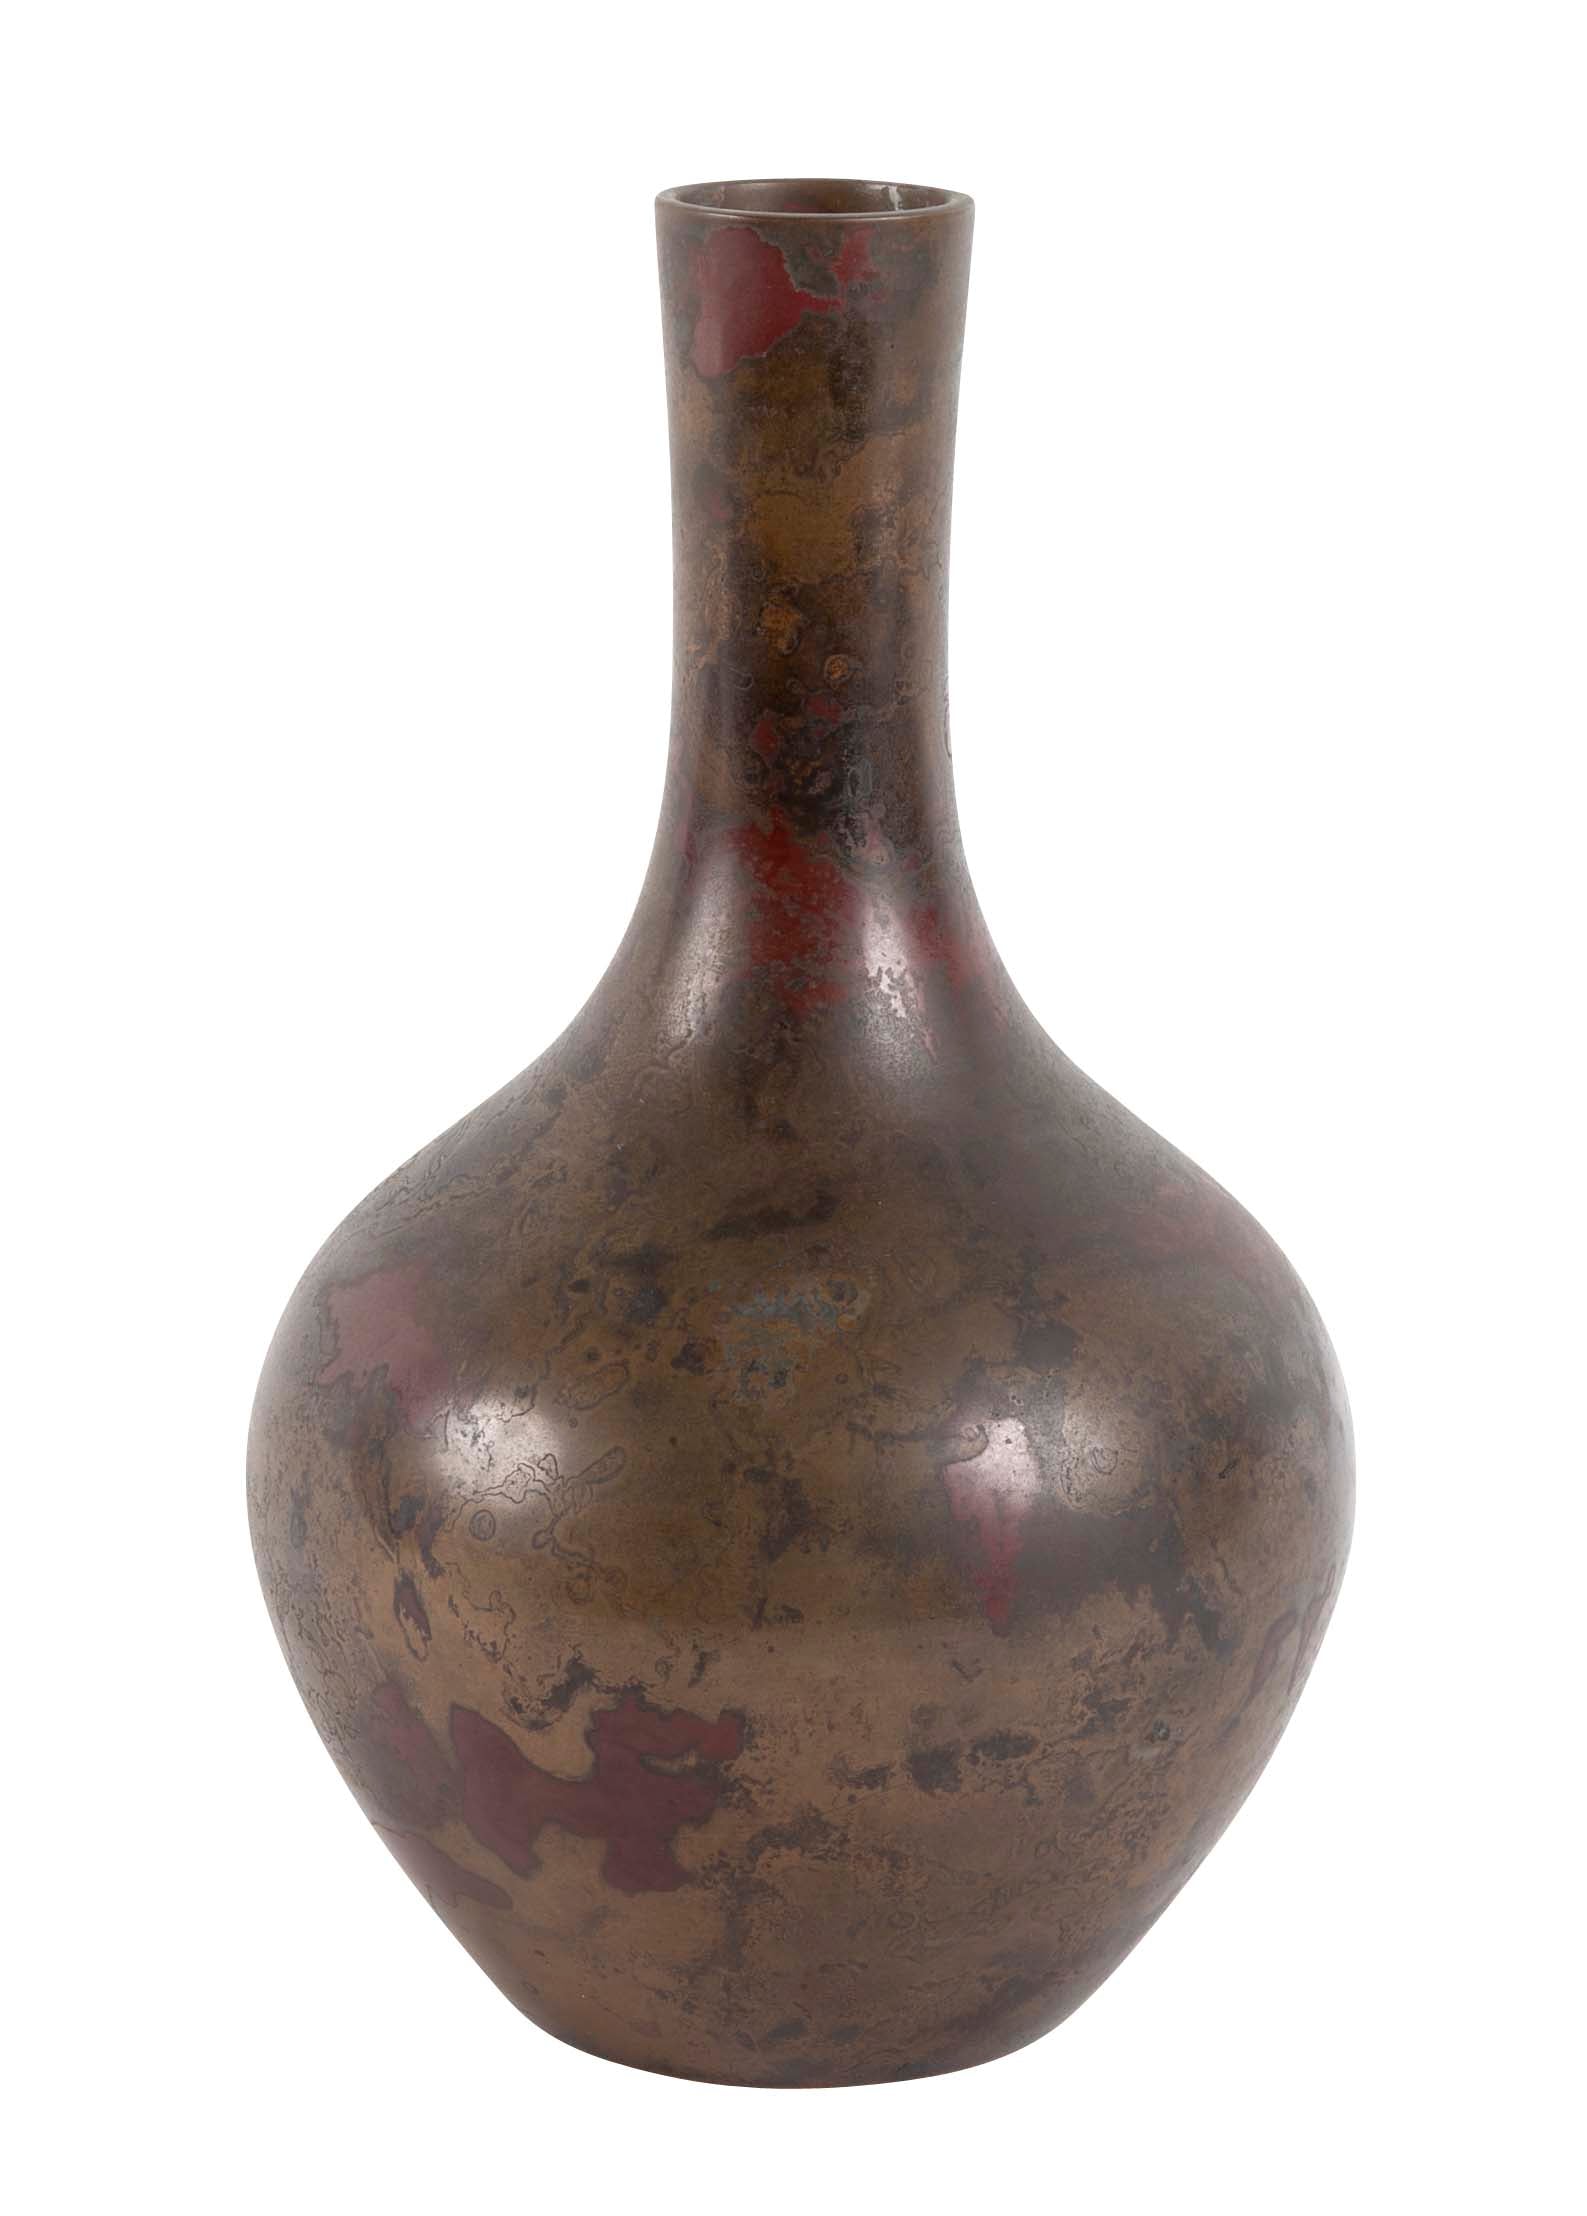 Japanese Bronze Vase with Marbleized Patina